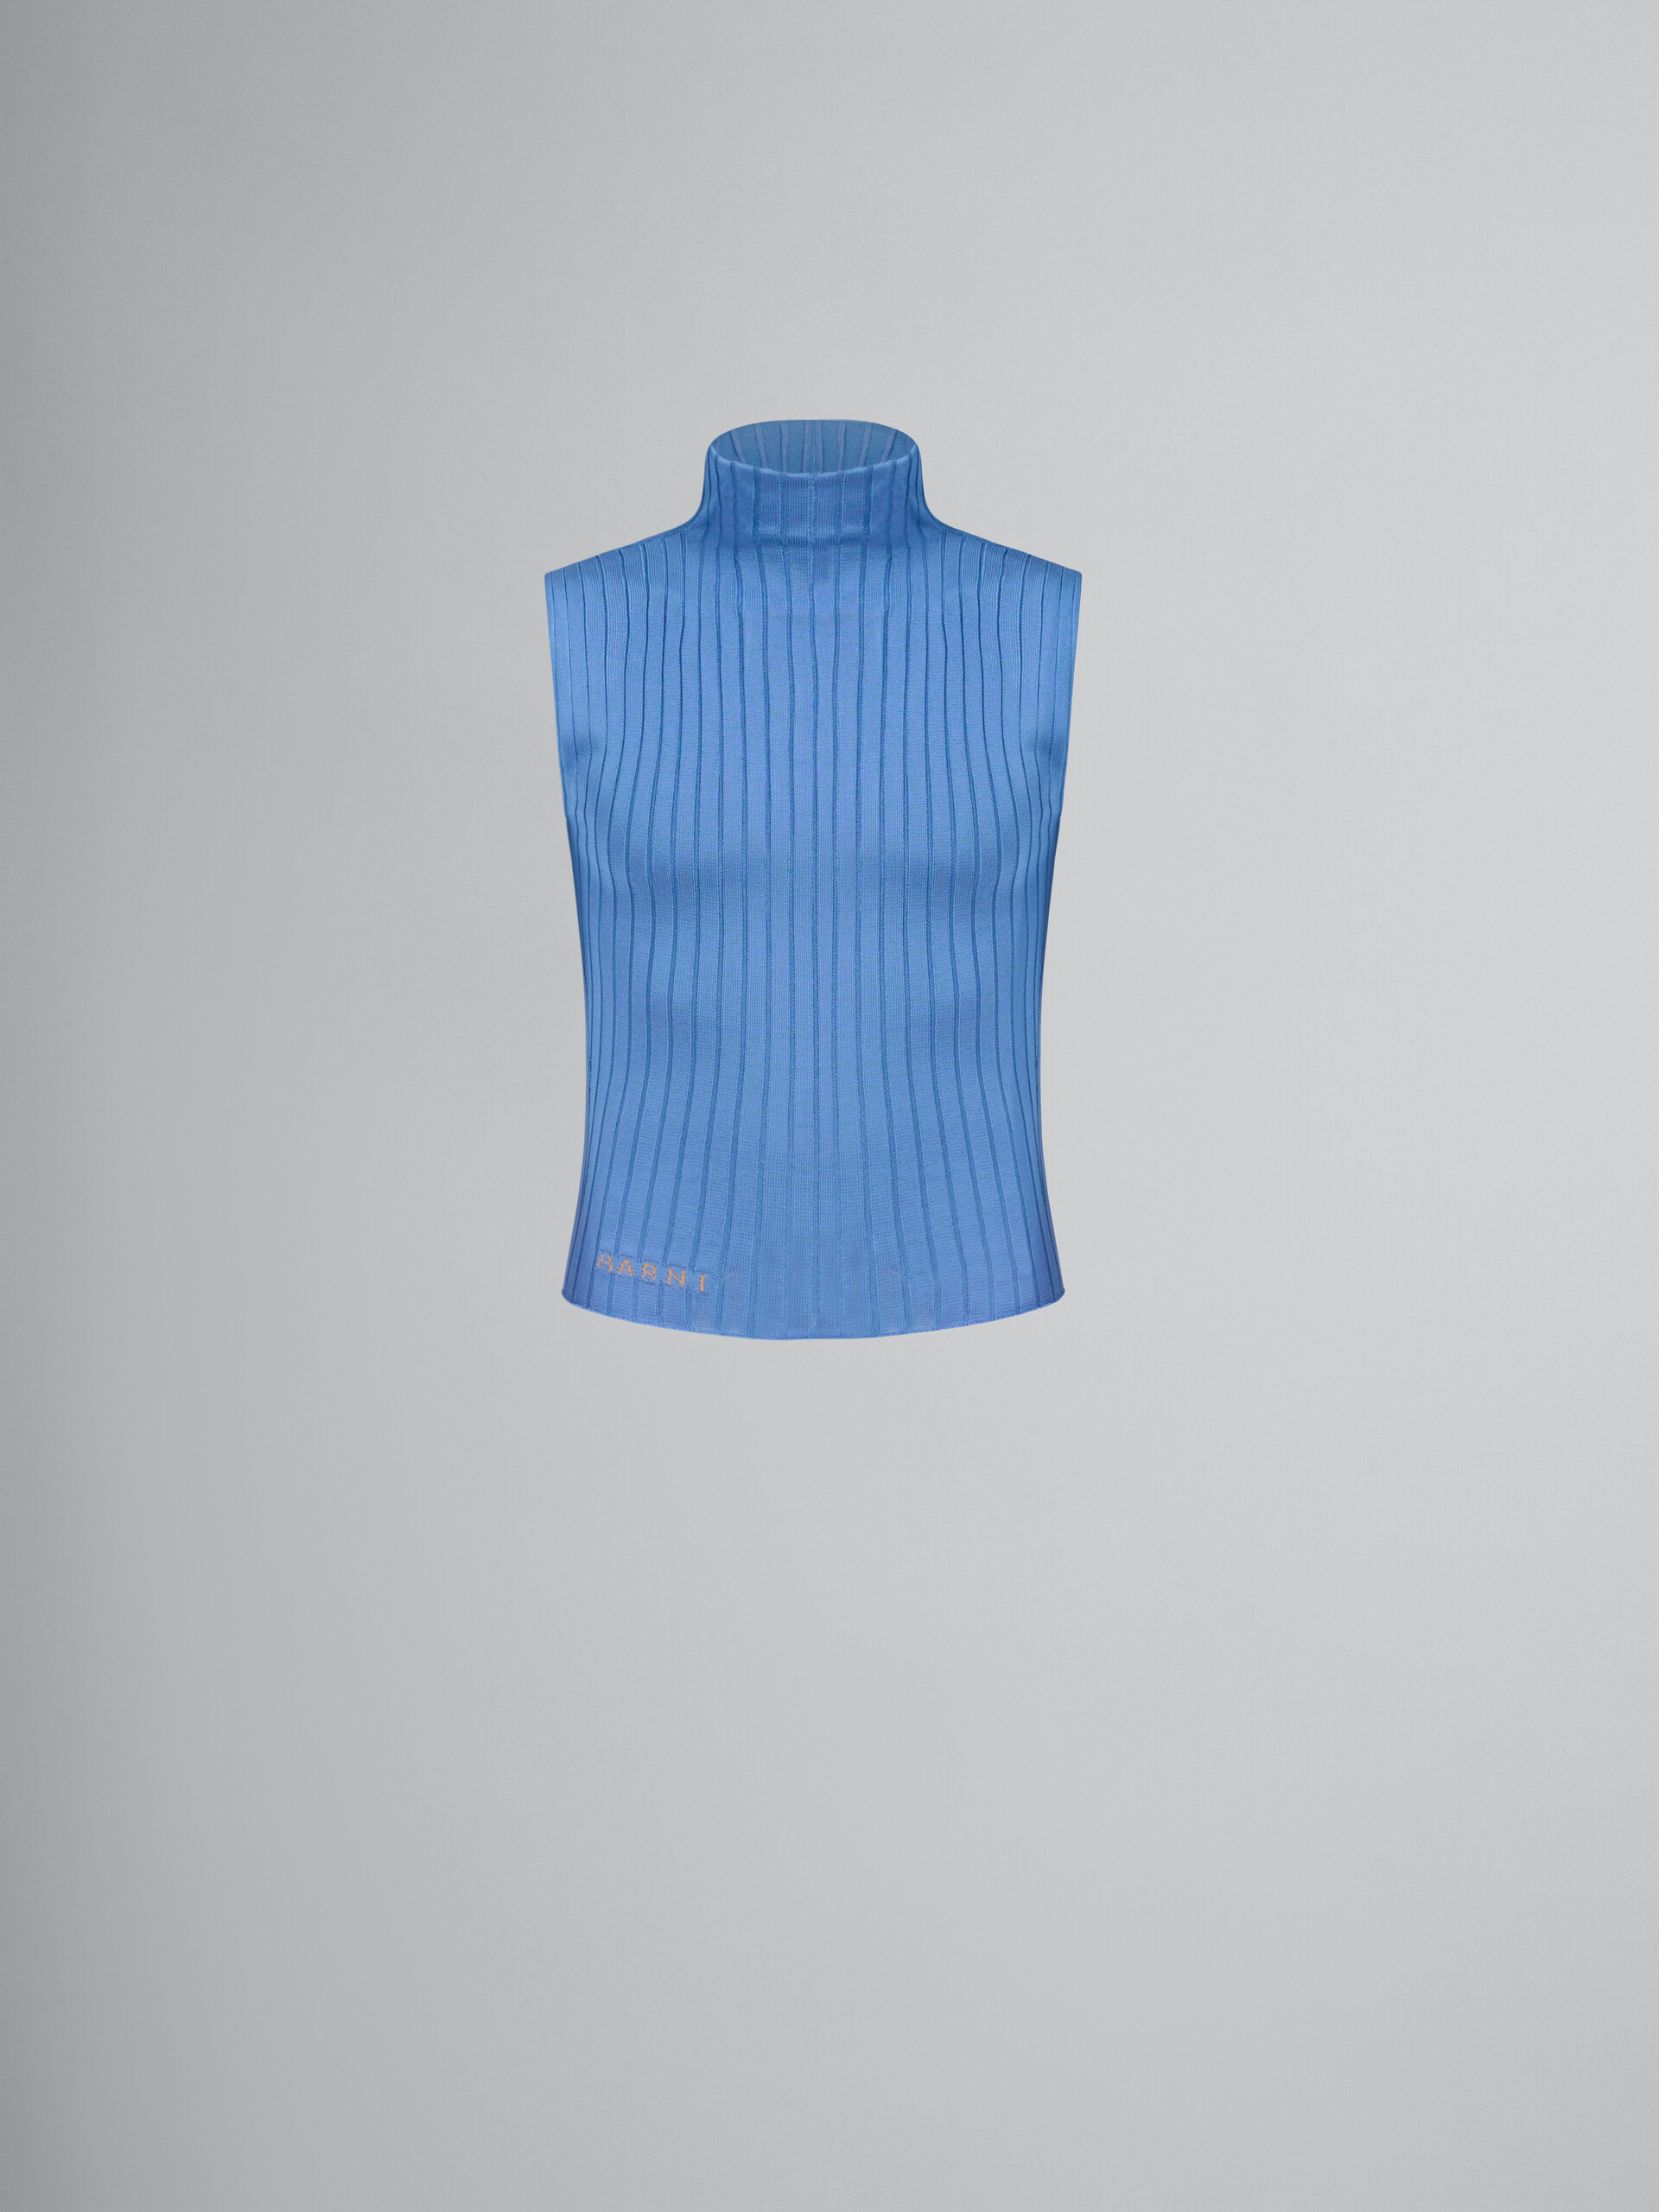 Blue ribbed viscose turtleneck vest - Pullovers - Image 1